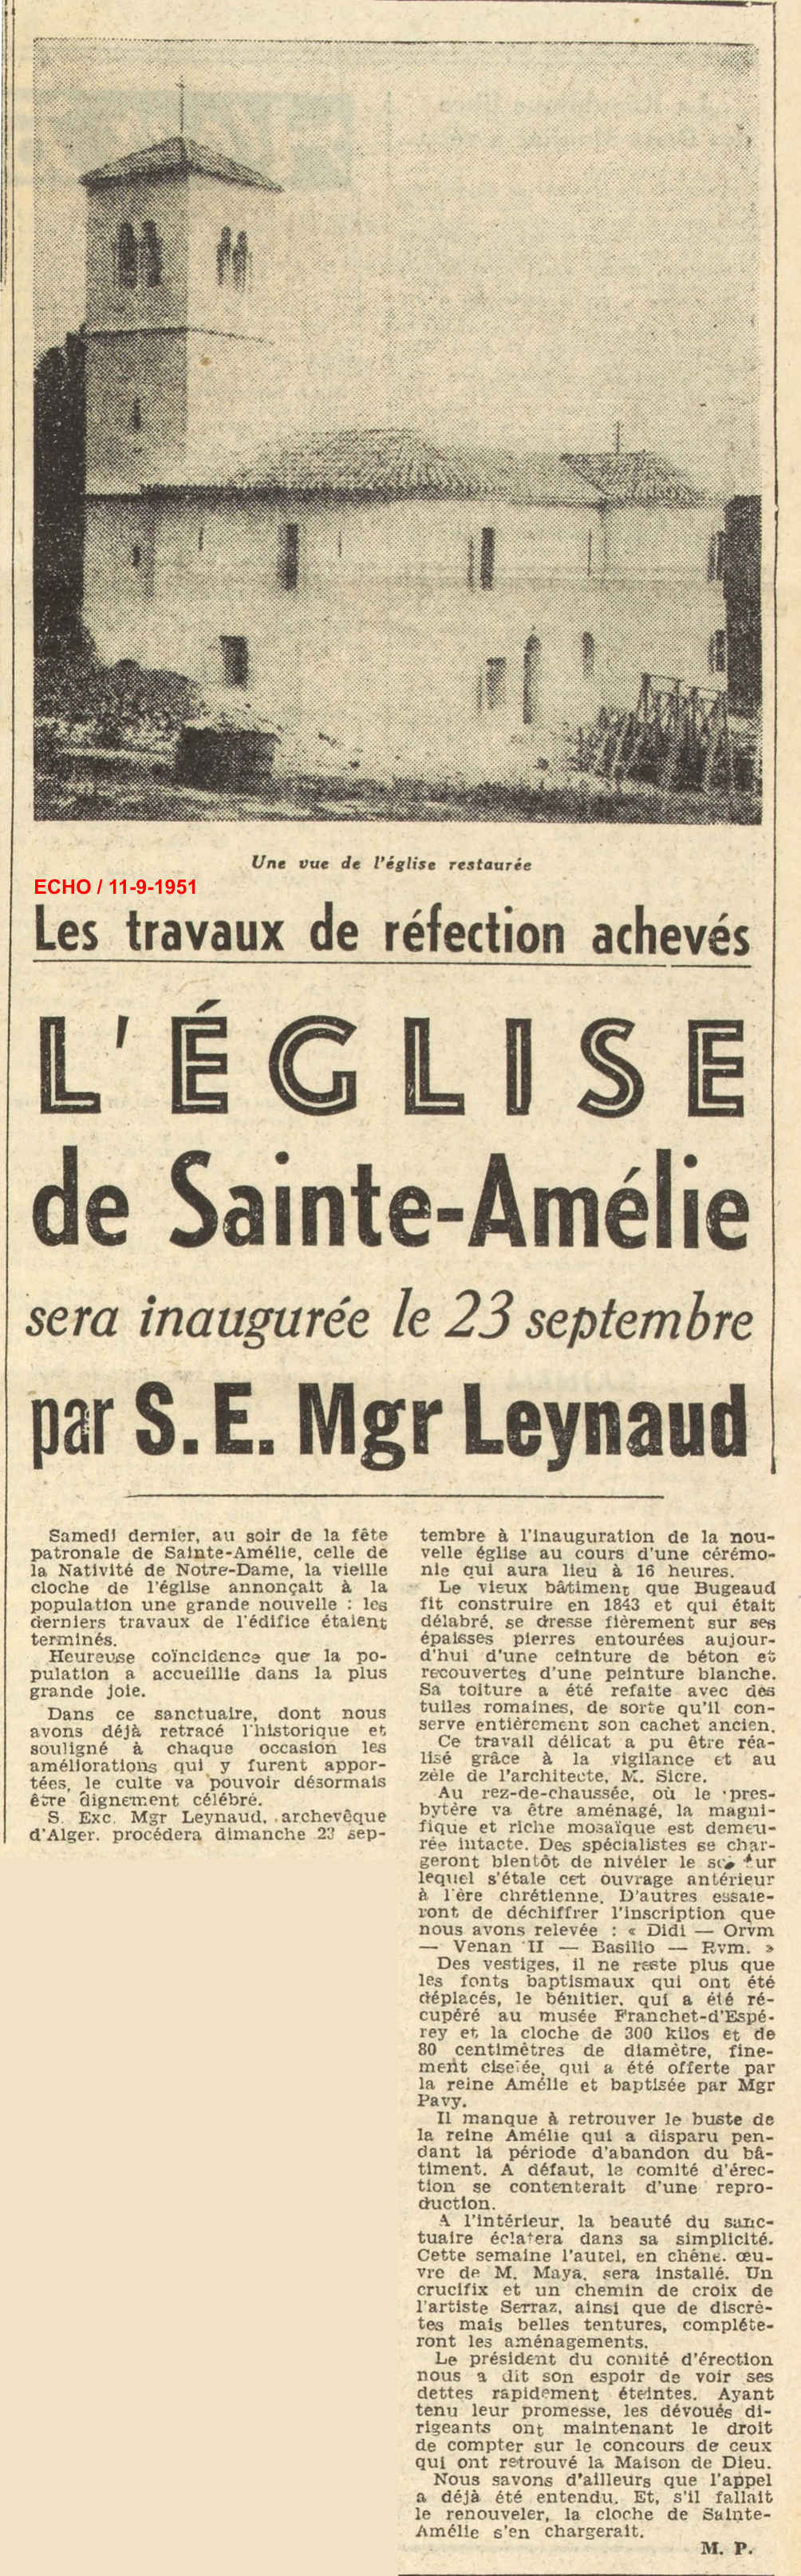 L'ÉGLISE de Sainte-Amélie sera inaugurée le 23 septembre par S. E. Mgr Leynaud